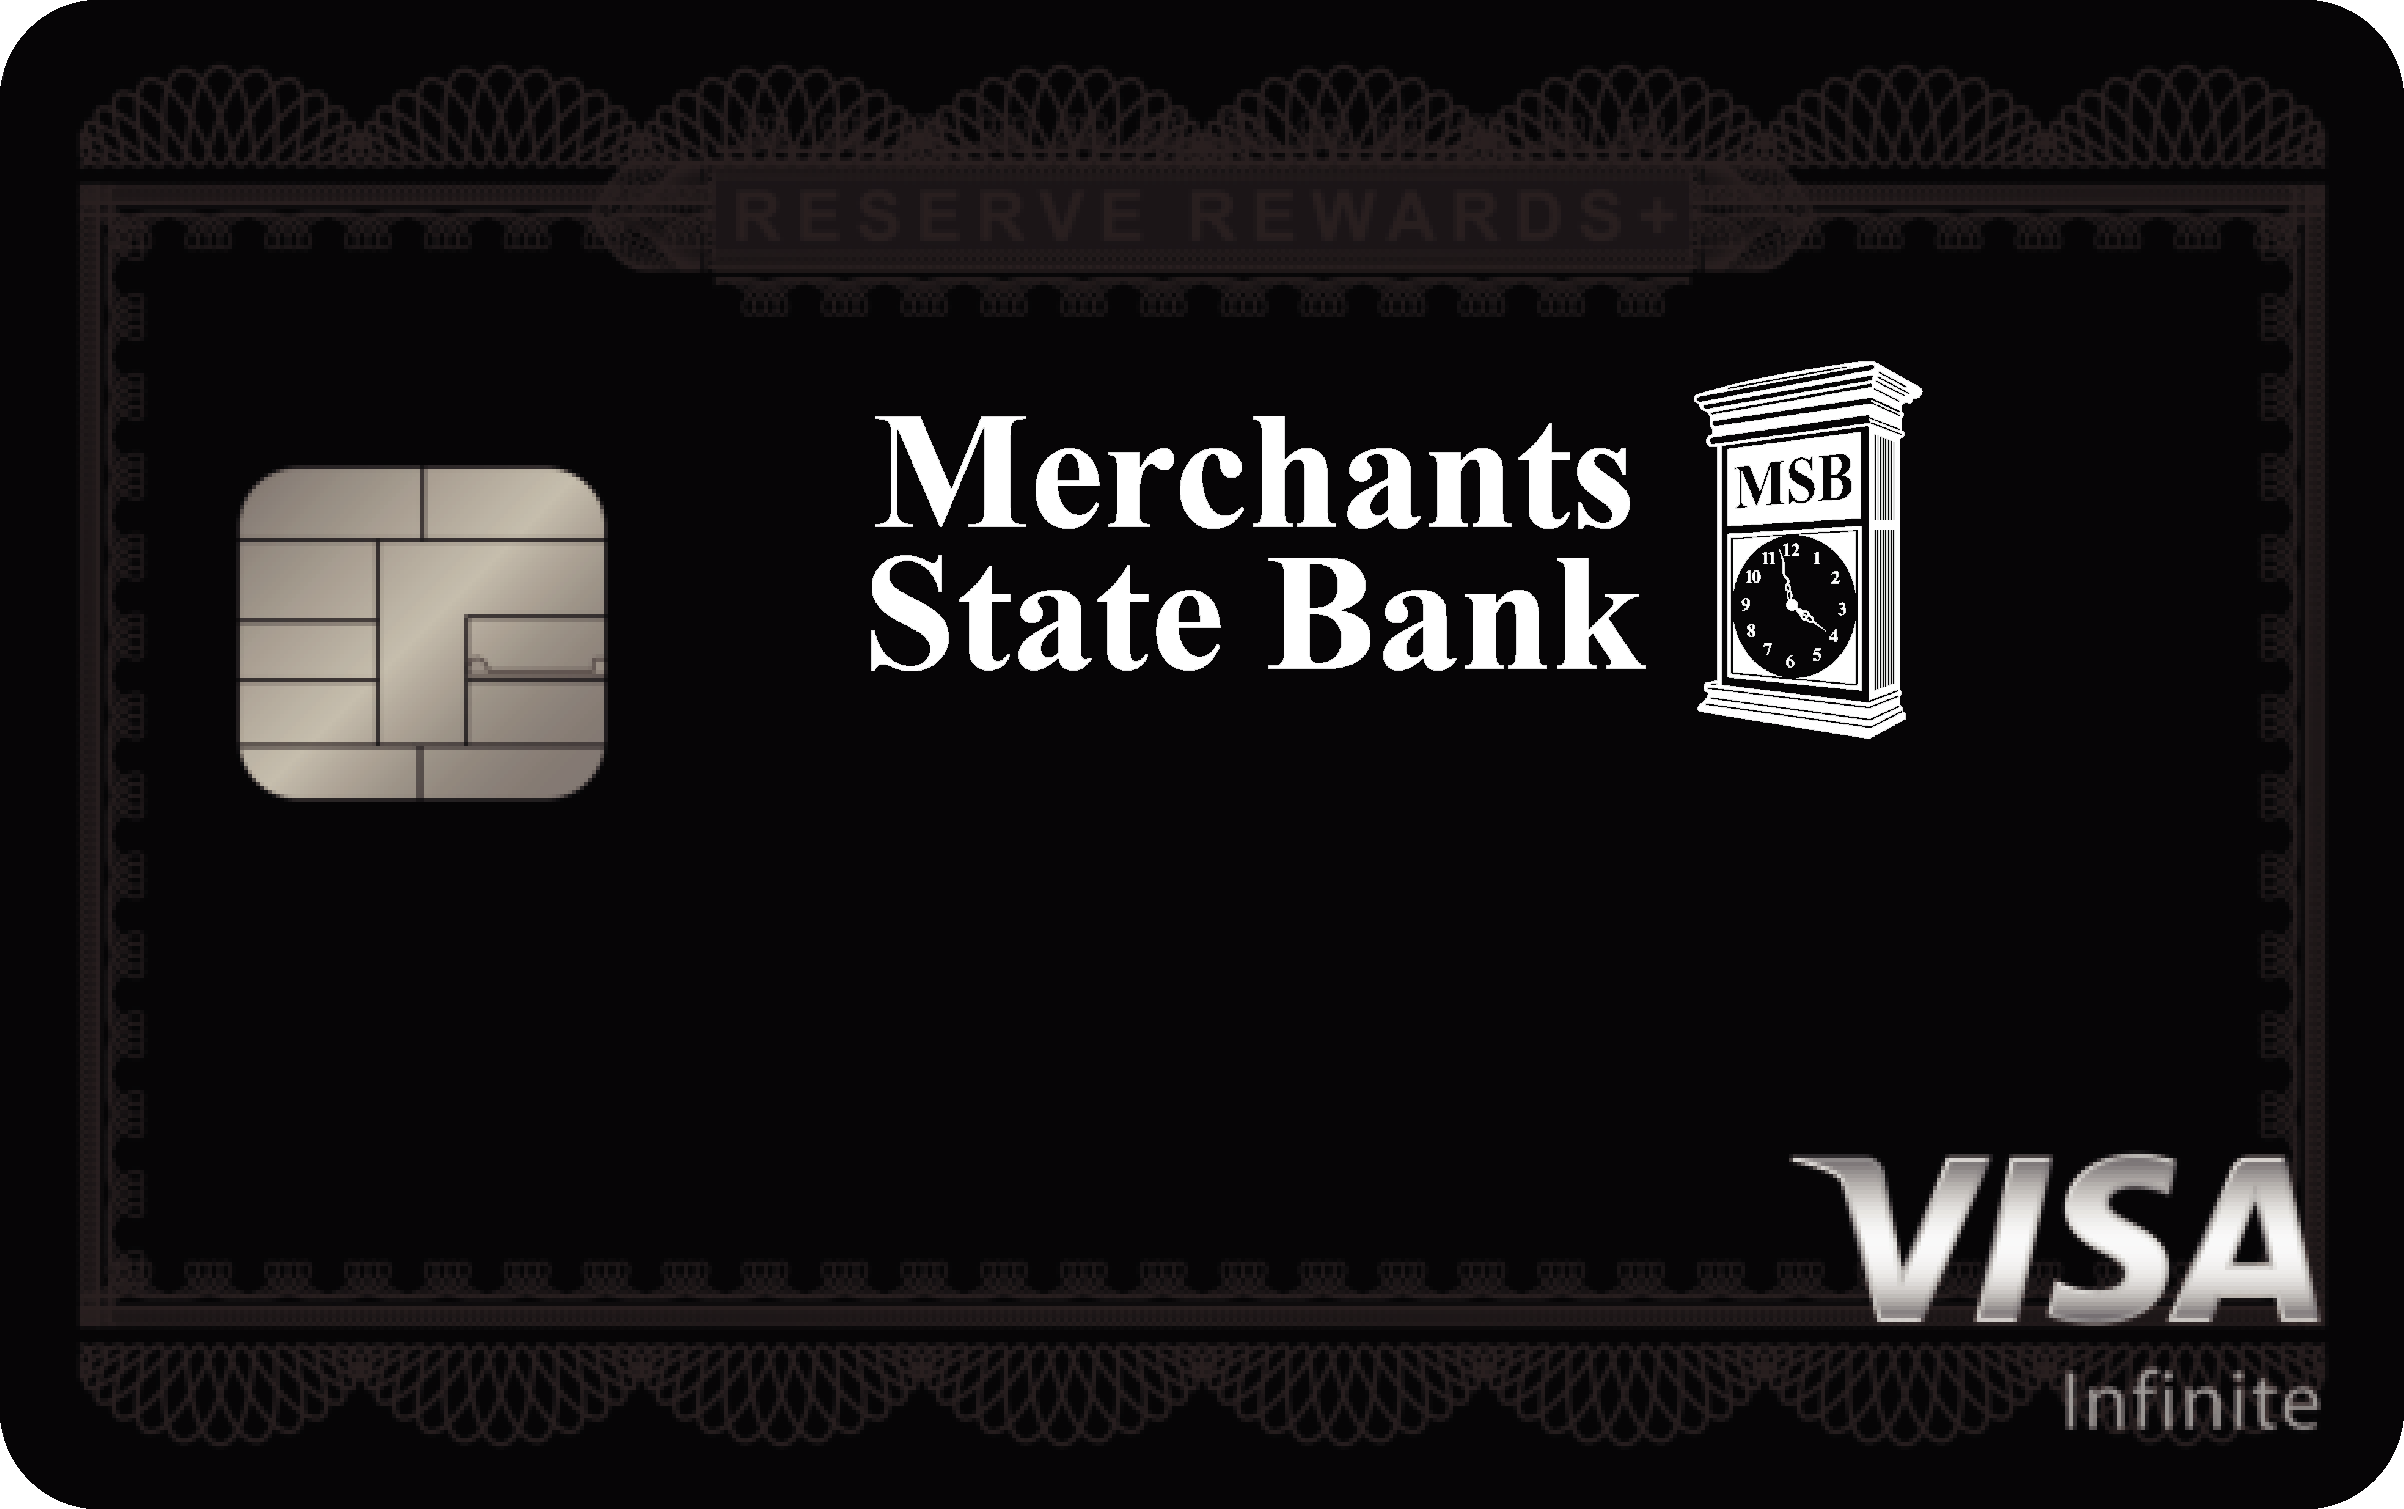 Merchants State Bank